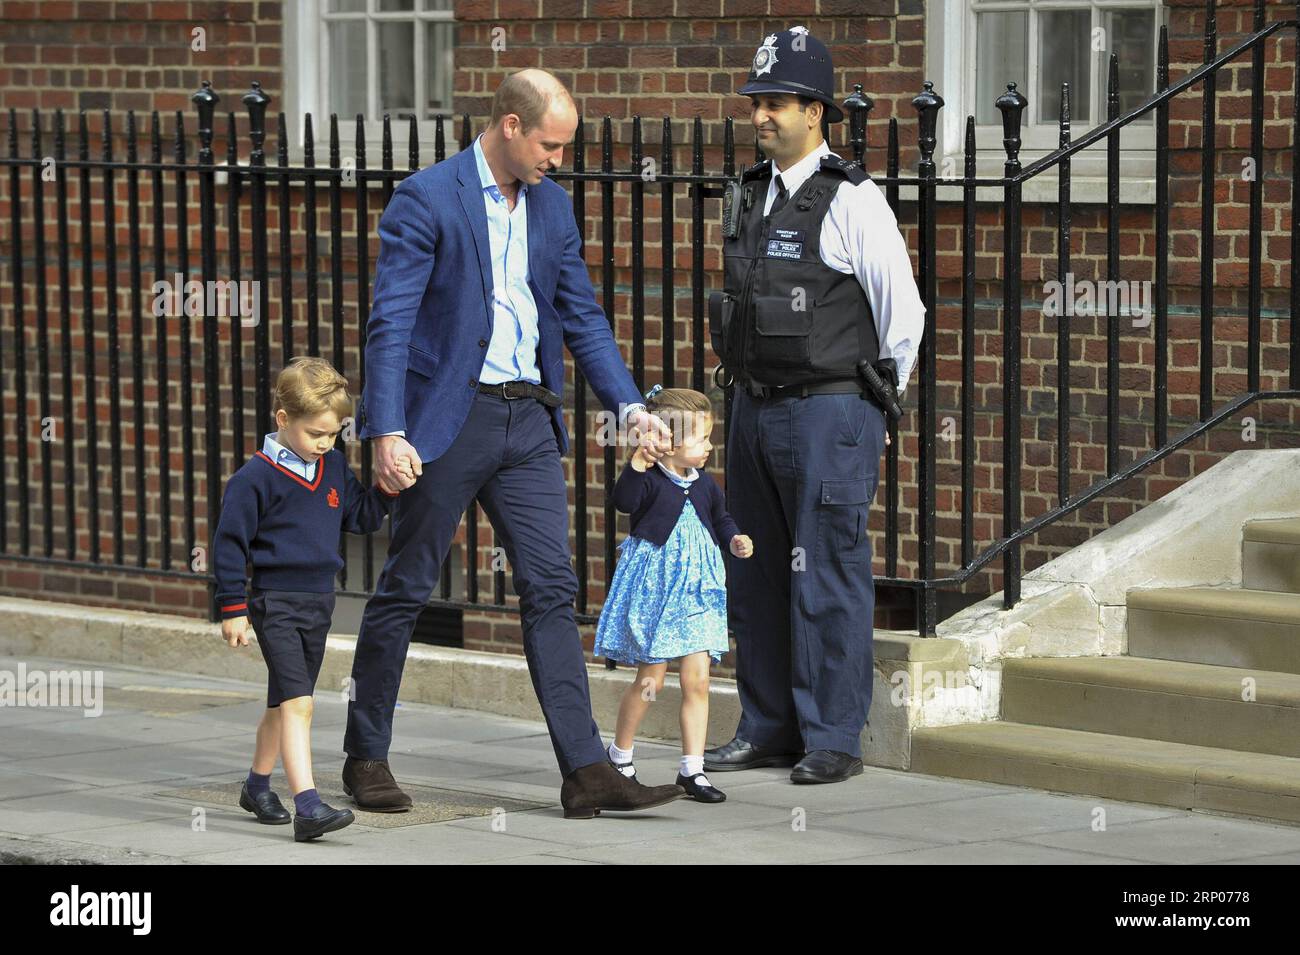 (180424) -- LONDRA, 24 aprile 2018 -- il principe William (2nd L), duca di Cambridge arriva con il principe George (1st L) e la principessa Charlotte (2nd R) per visitare la Gran Bretagna S Catherine, duchessa di Cambridge, che ha dato alla luce un bambino al St Mary S Hospital di Londra, in Gran Bretagna, il 23 aprile 2018. La principessa Kate lunedì ha dato alla luce un ragazzo, il suo terzo figlio, che è il quinto in linea di successione al trono britannico. BRITAIN-LONDON-ROYAL BABY StephenxChung PUBLICATIONxNOTxINxCHN Foto Stock